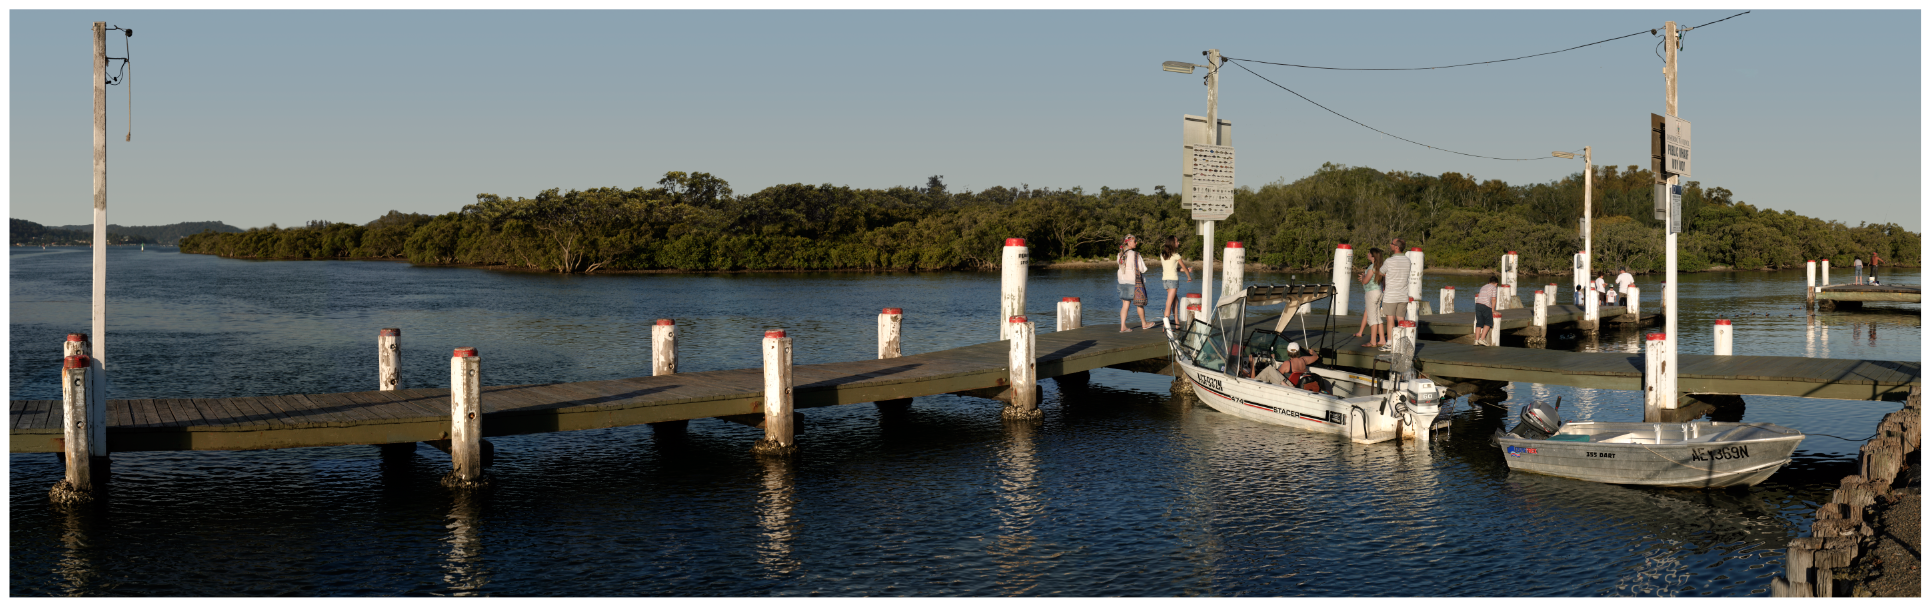 Woy Woy Dock - NSW